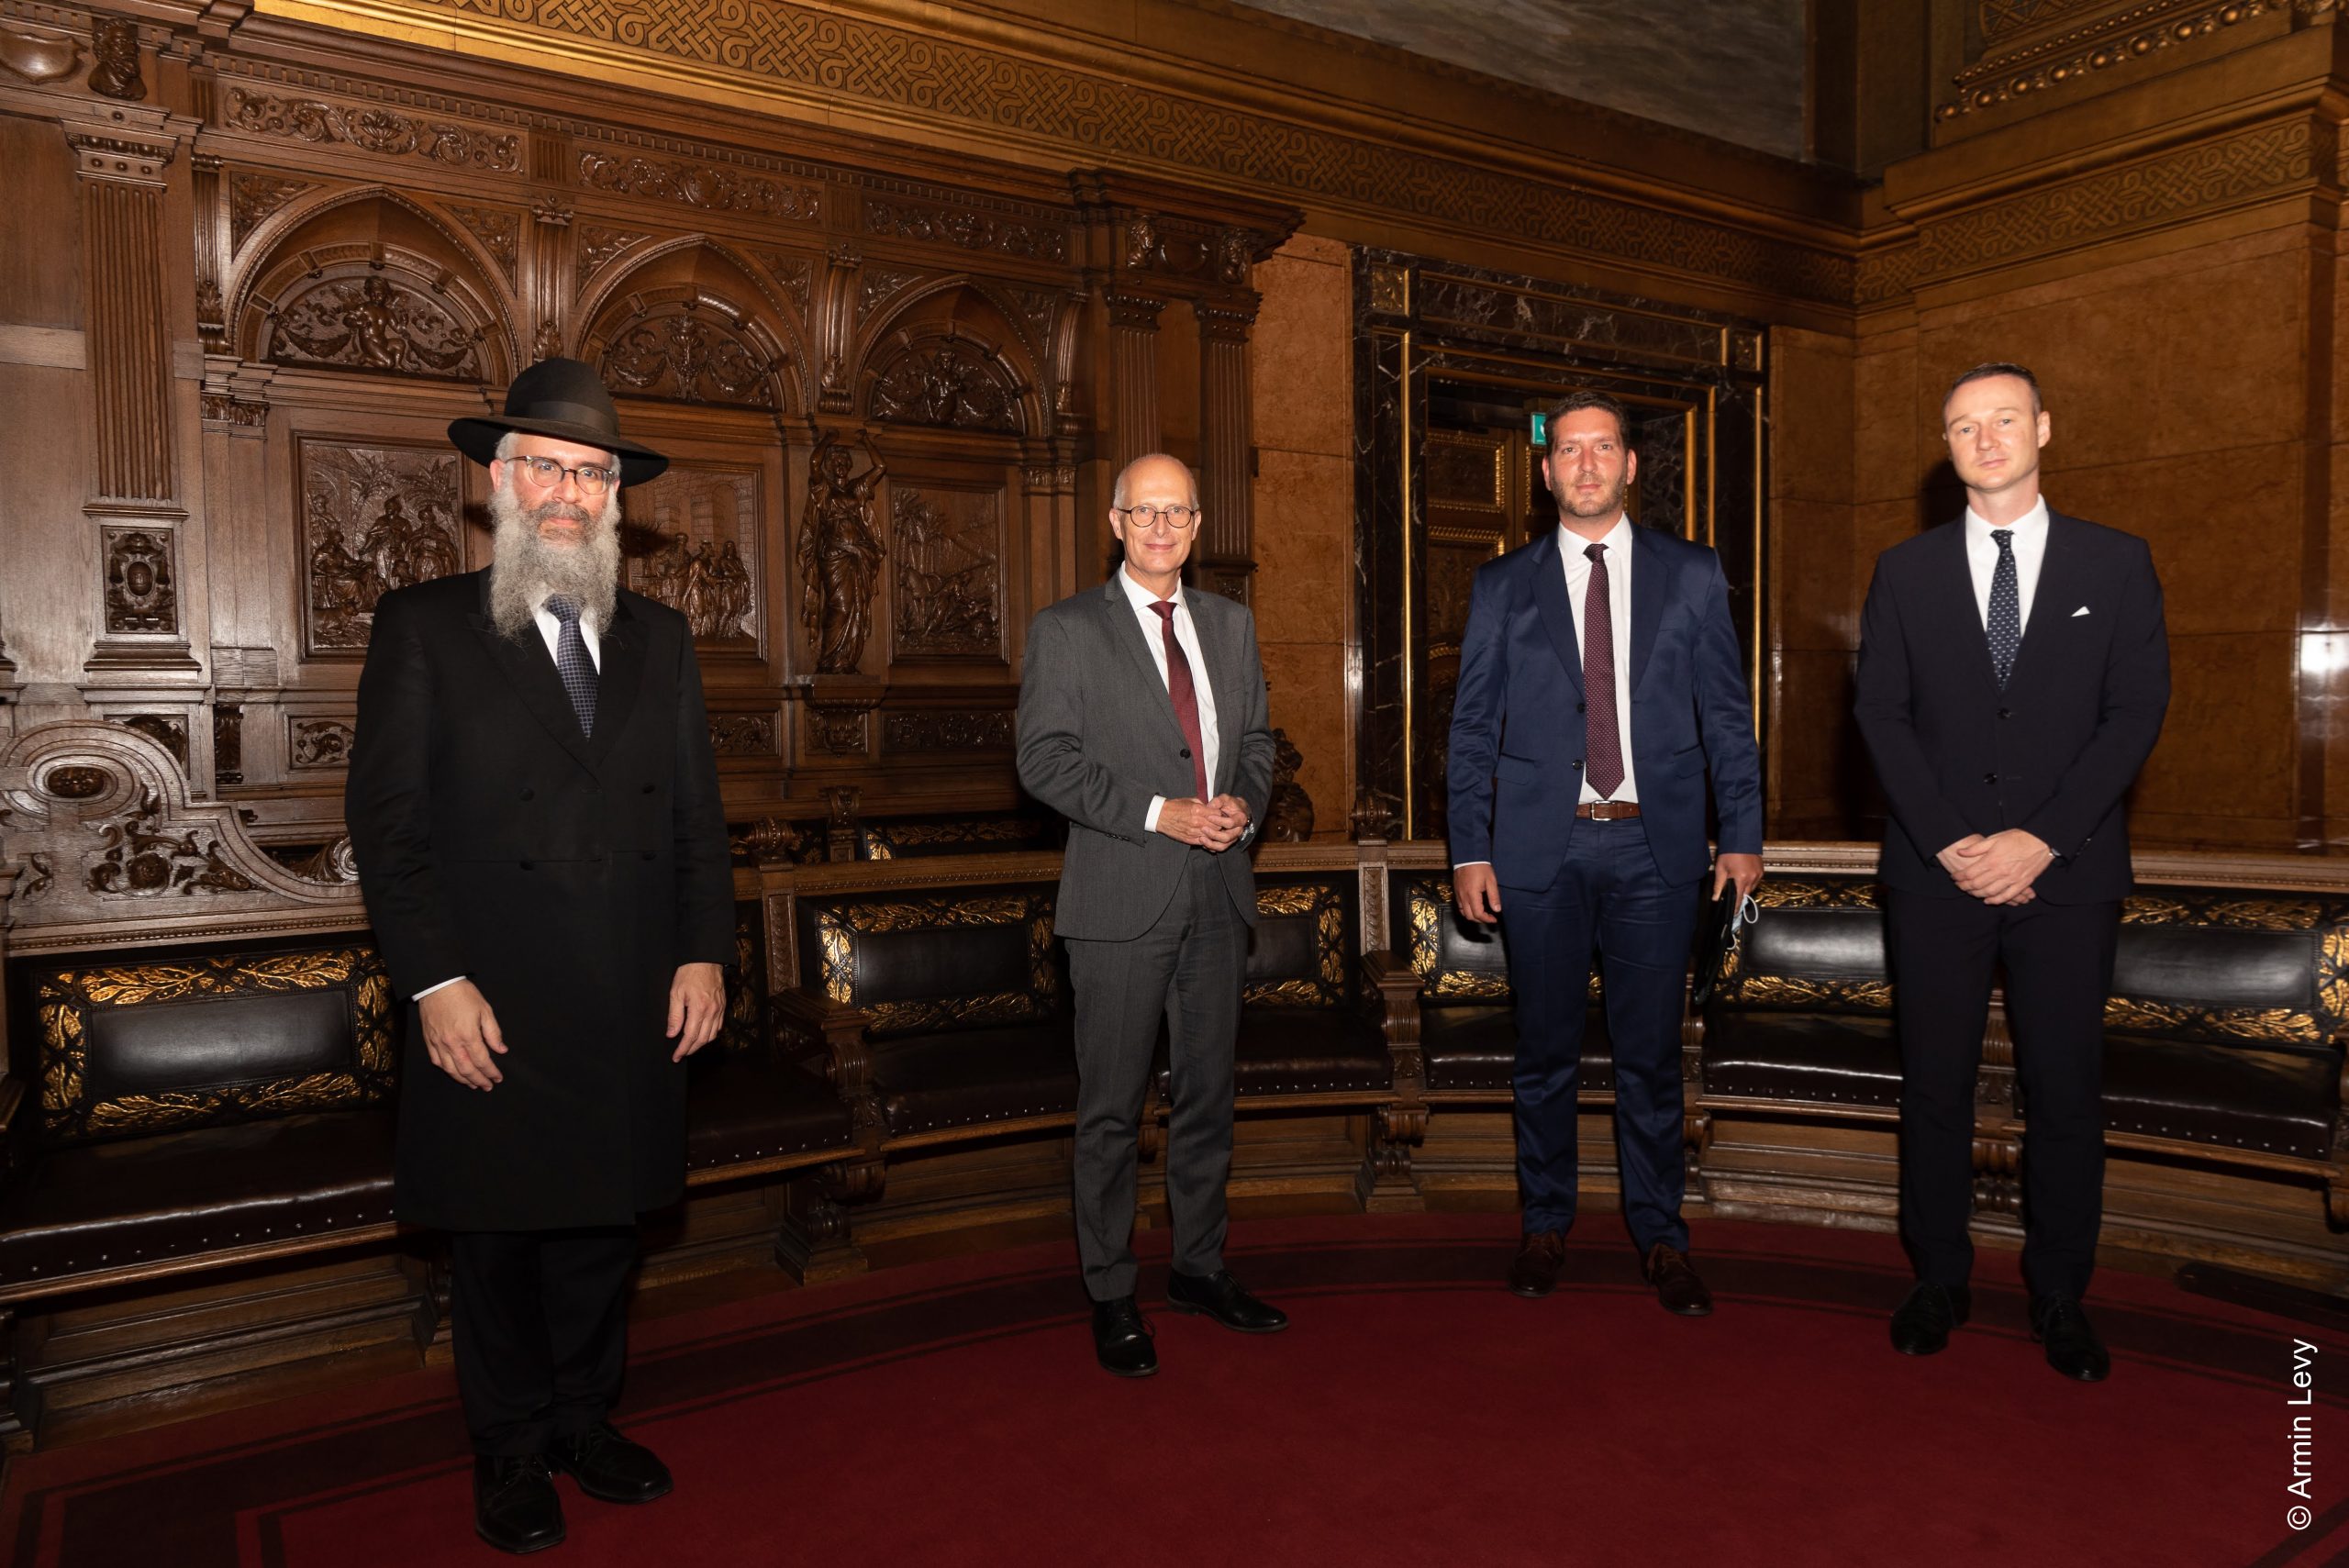 #2021JLID: Bürgermeister Tschentscher empfängt Mitglieder der Jüdischen Gemeinden im Hamburger Rathaus